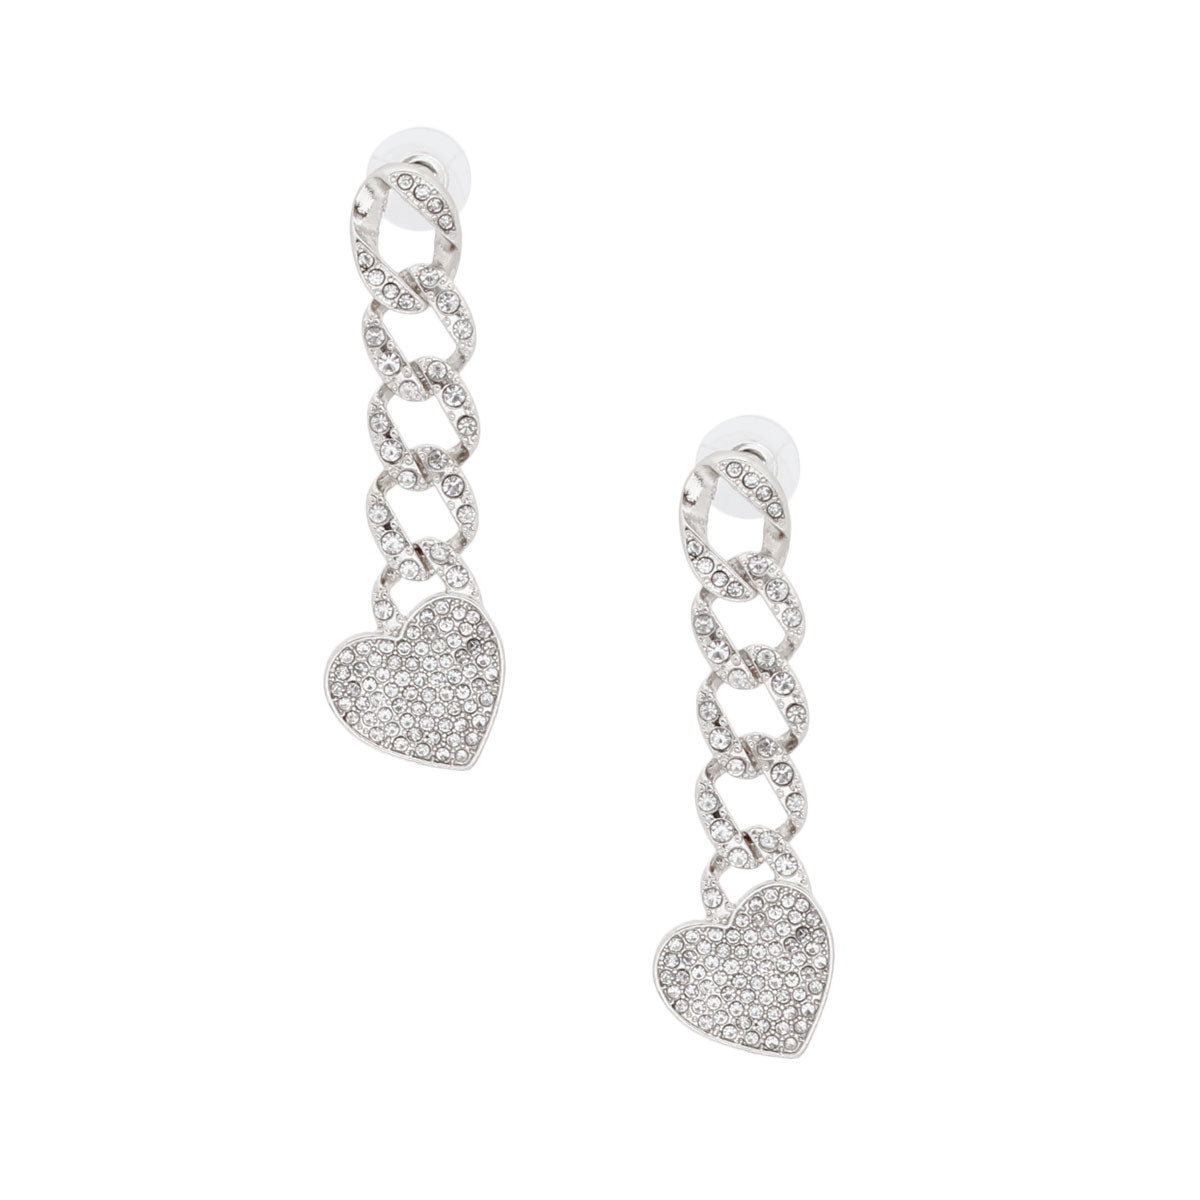 Silver Iced Chain Link Heart Earrings